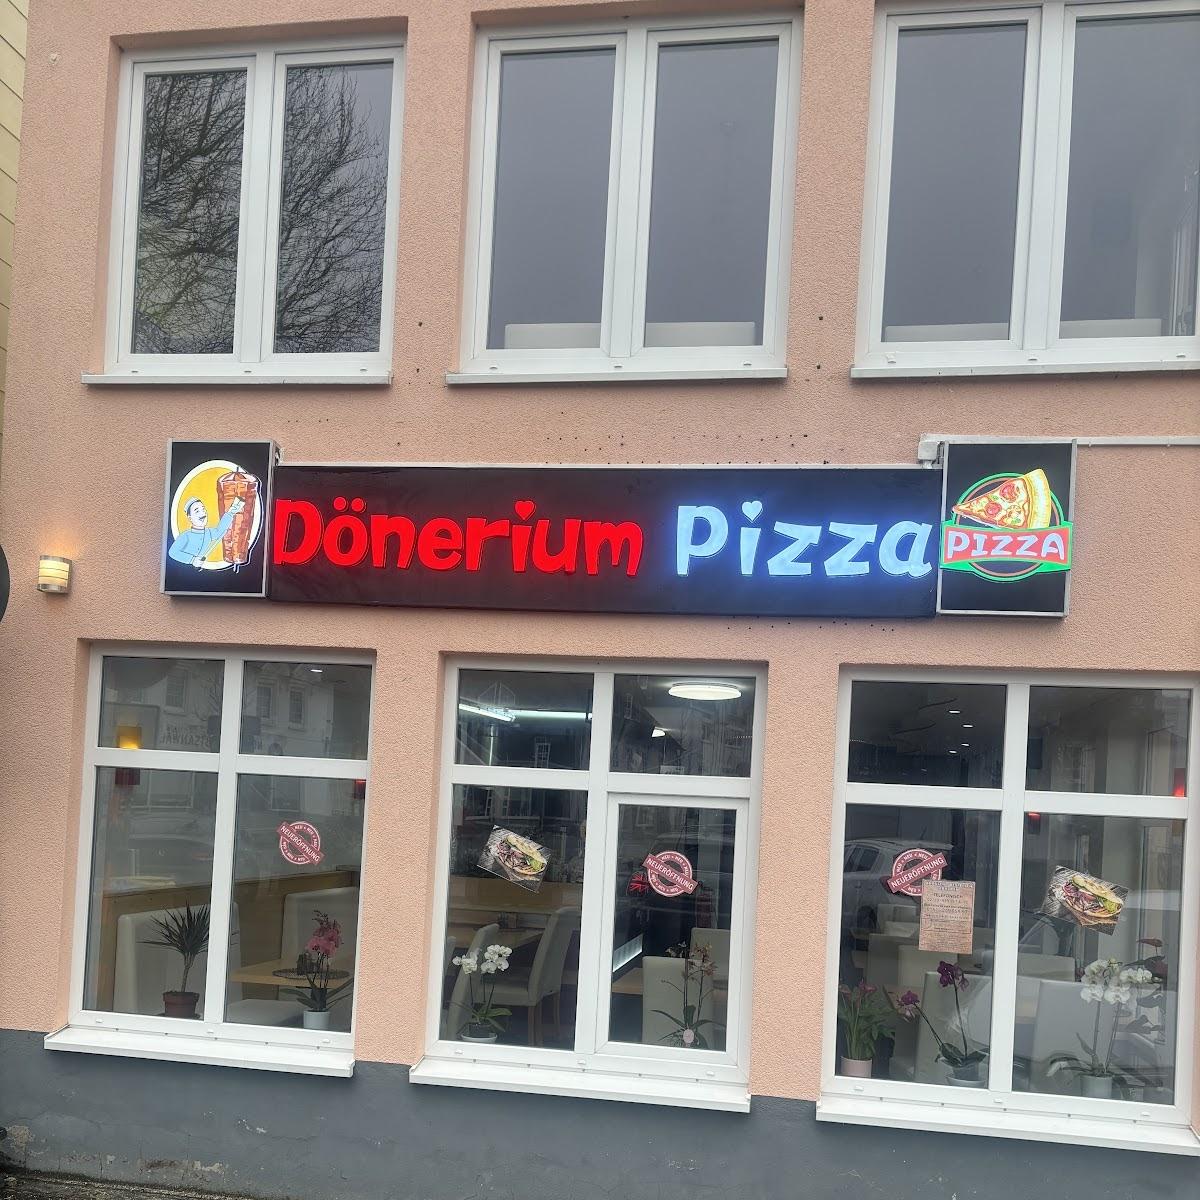 Restaurant "Dönerium Pizza" in Haiger